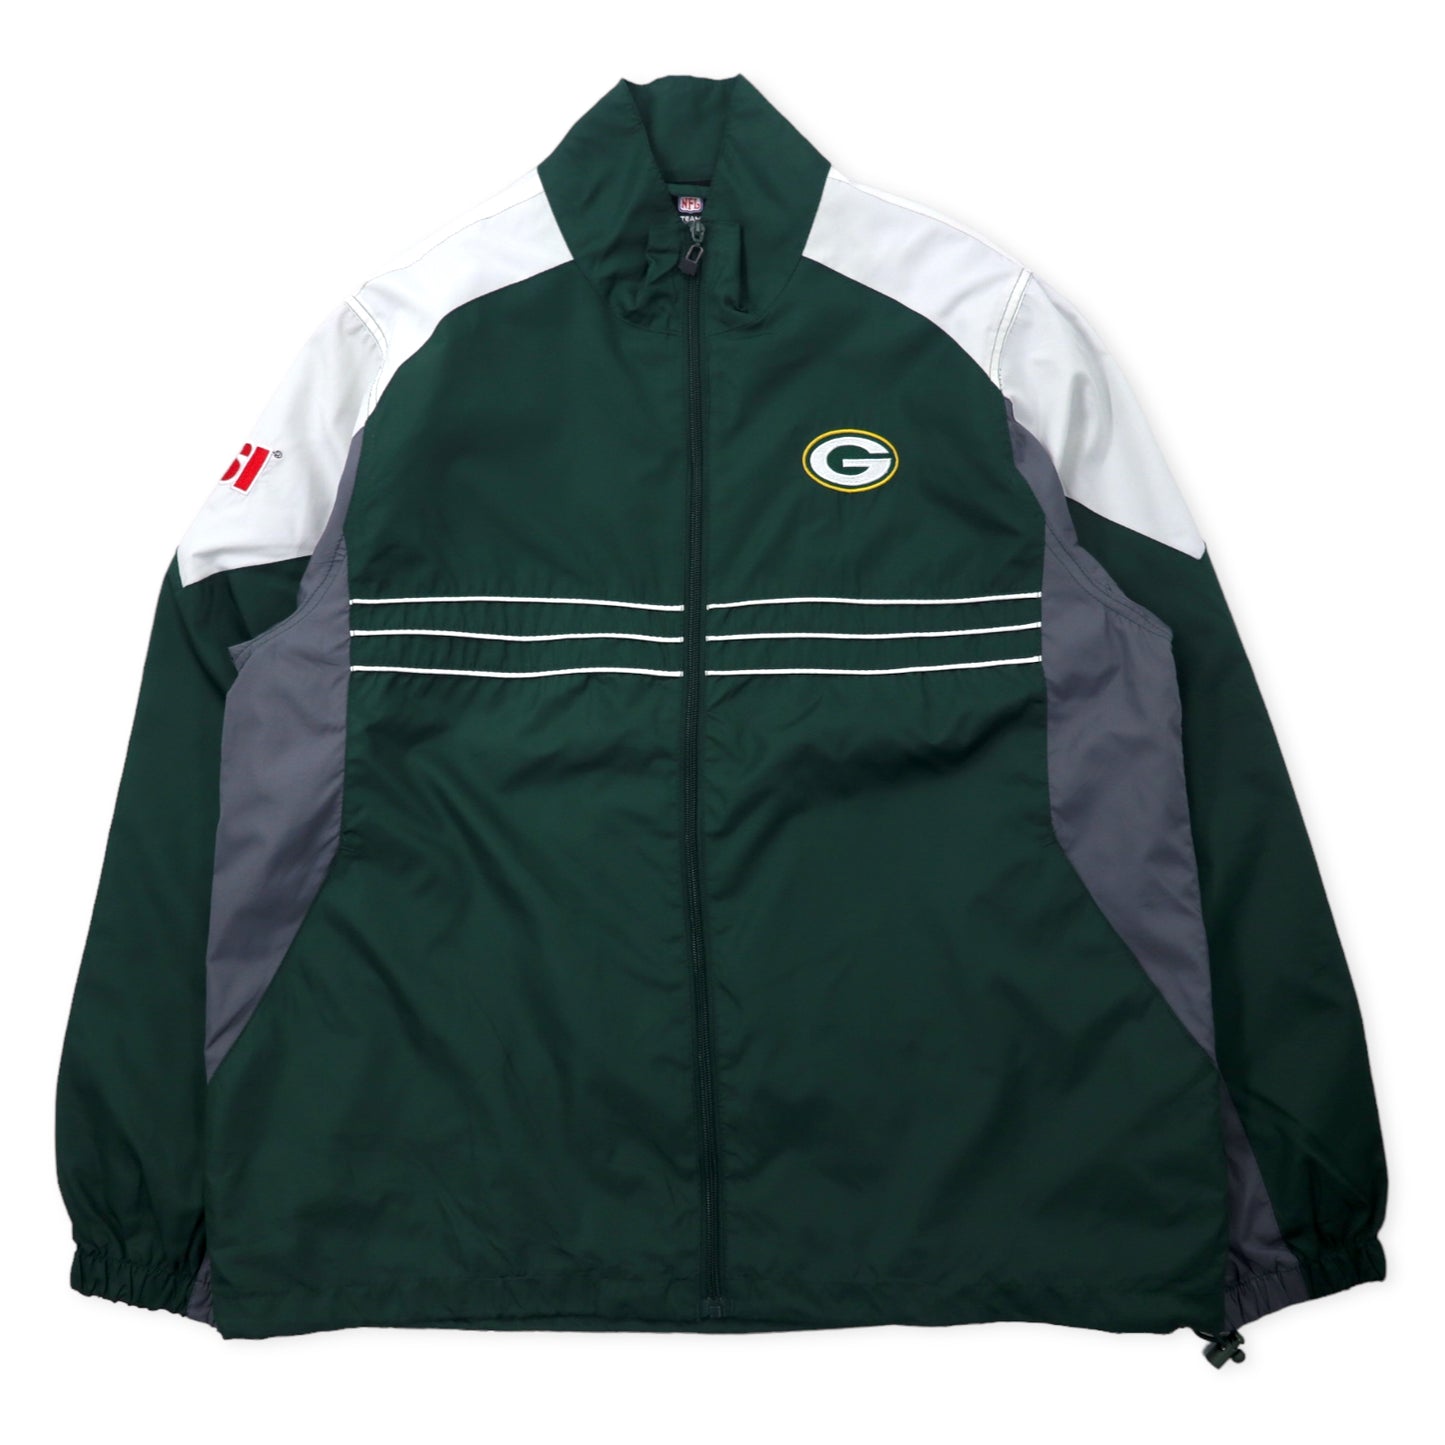 Reebok NFL Green Bay Packers Track Jacket Windbreaker L Green